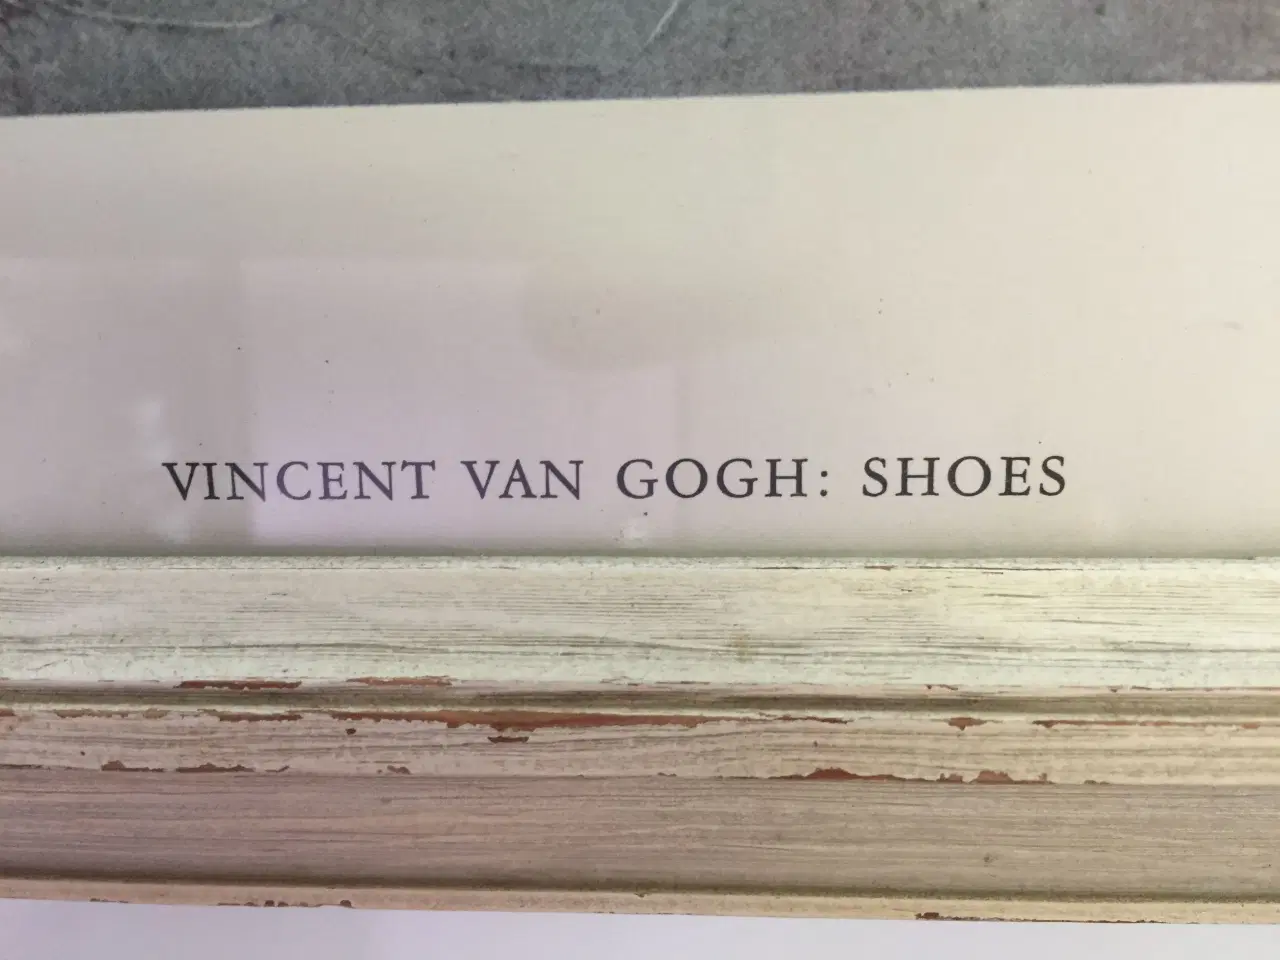 Billede 3 - billed af van gogh sko er tryk